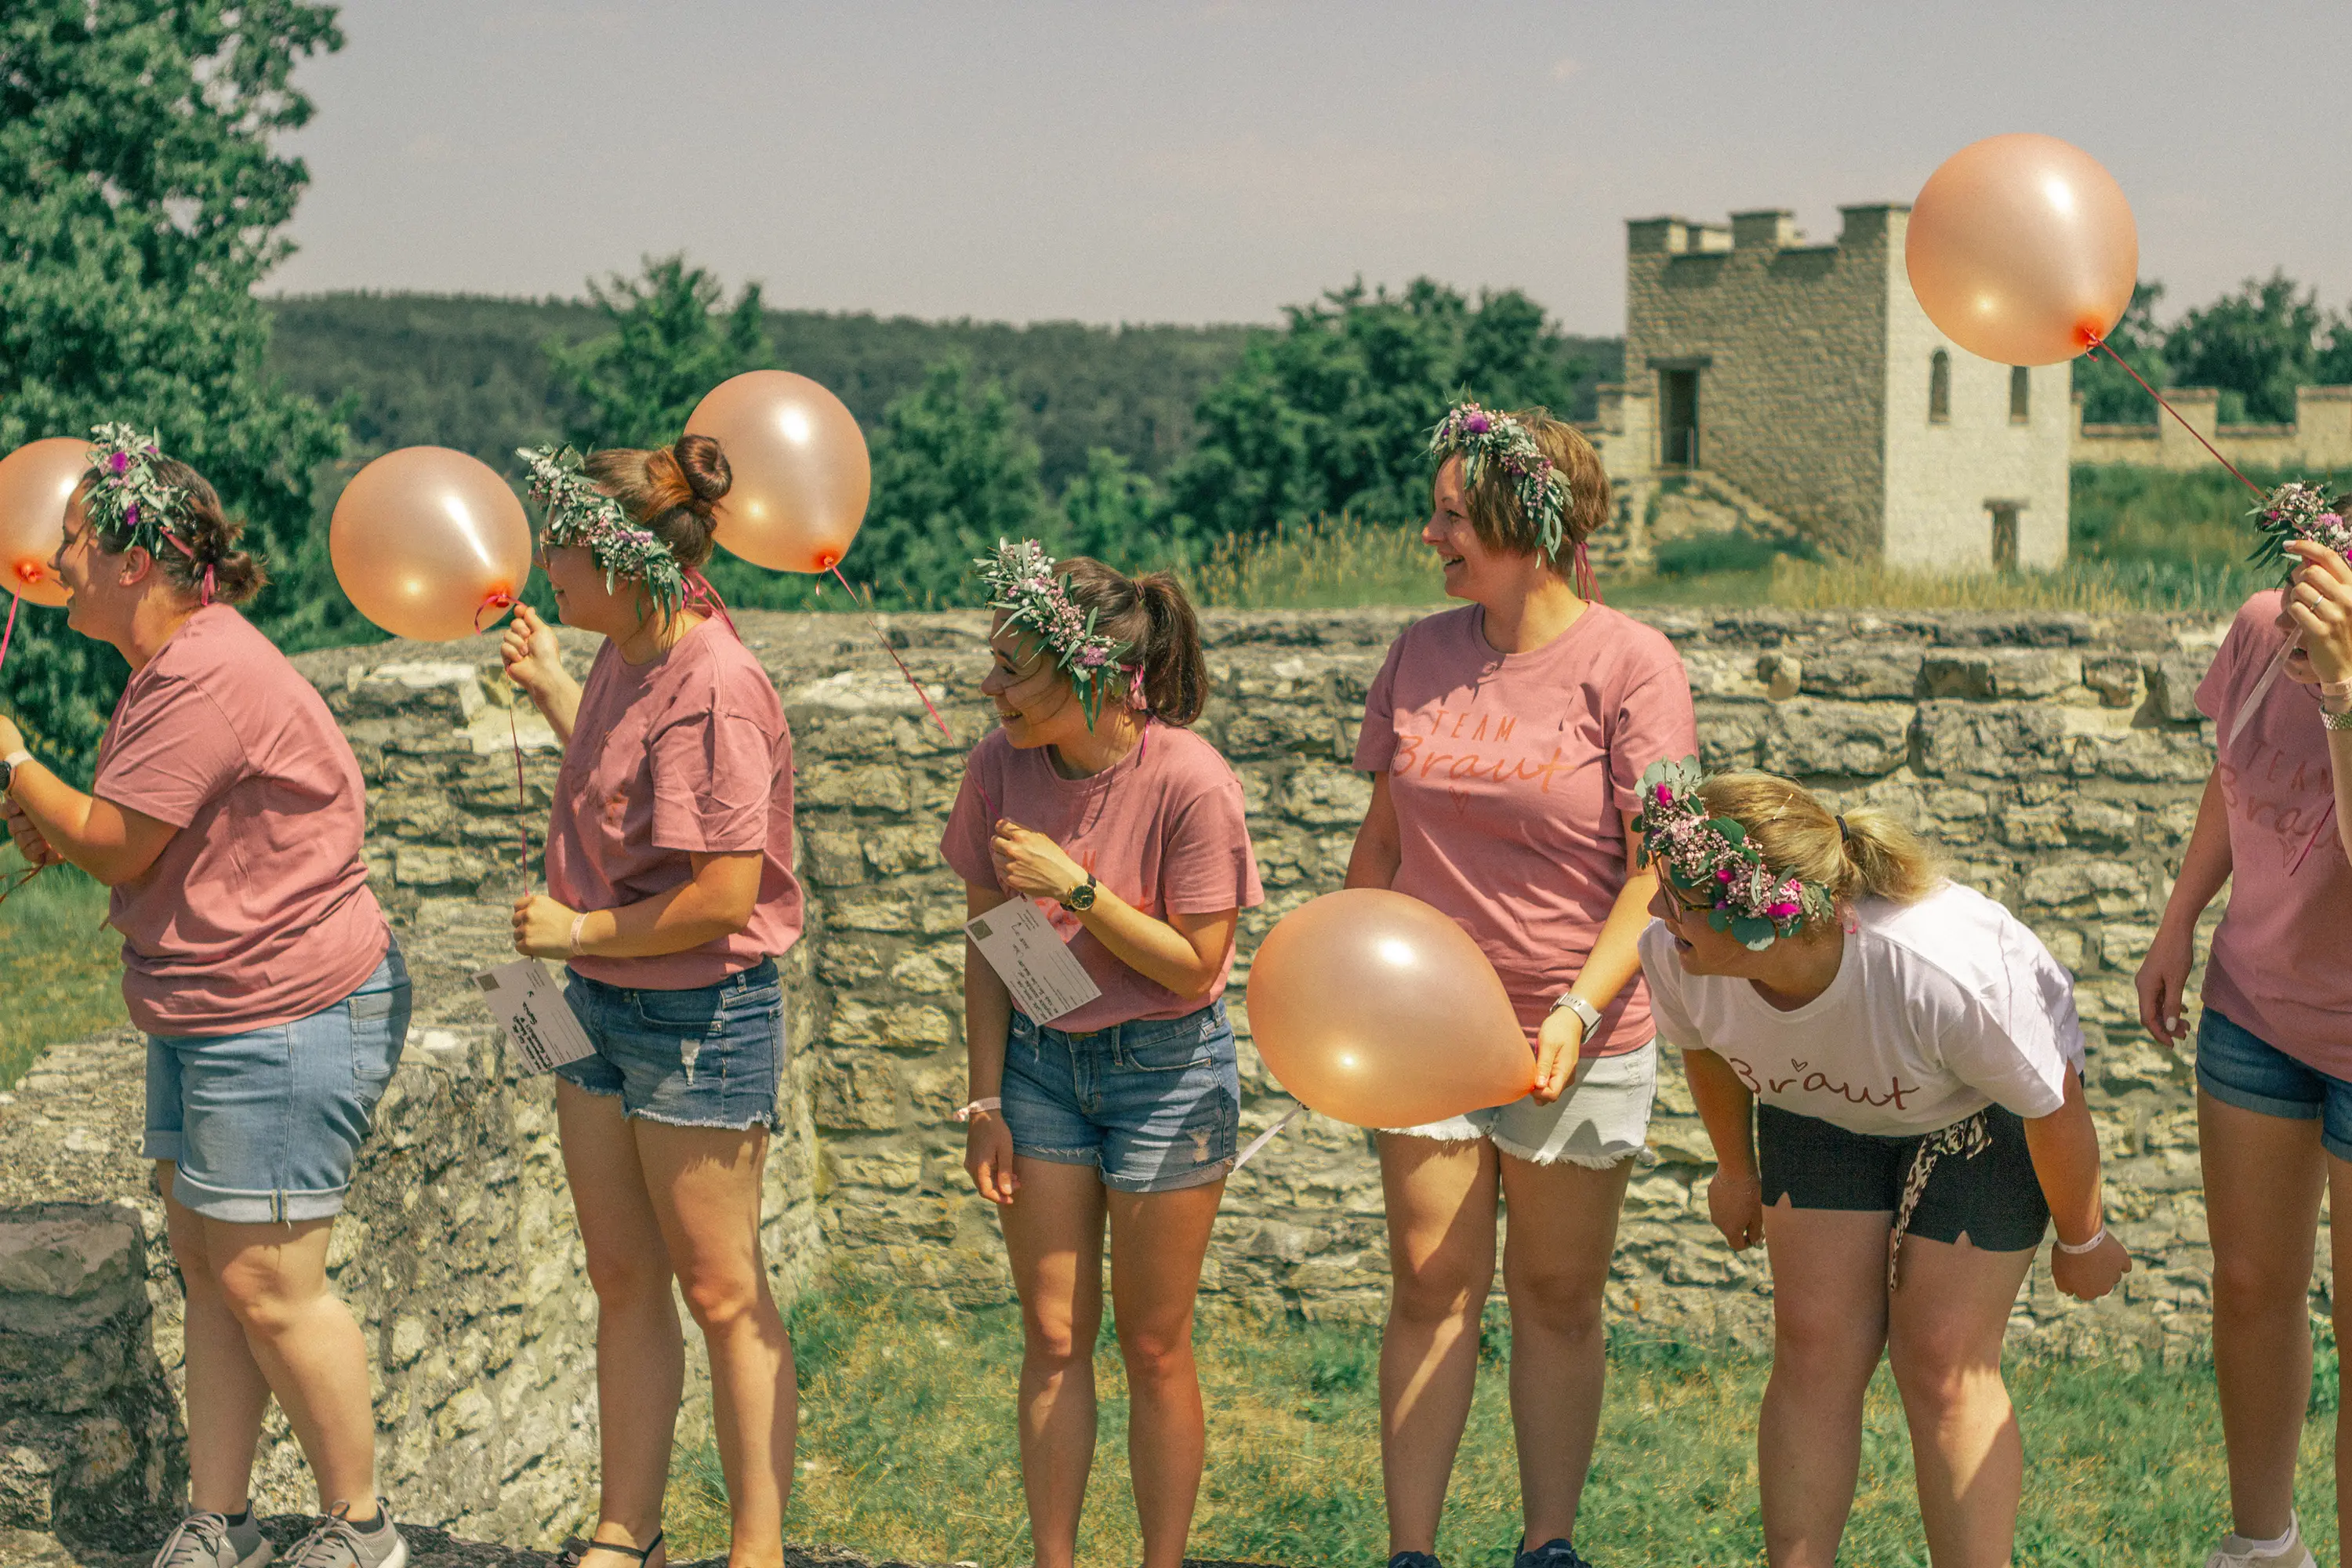 Die Mädels stehen auf einer Steinmauer mit Luftballons und schauen in eine Richtung.